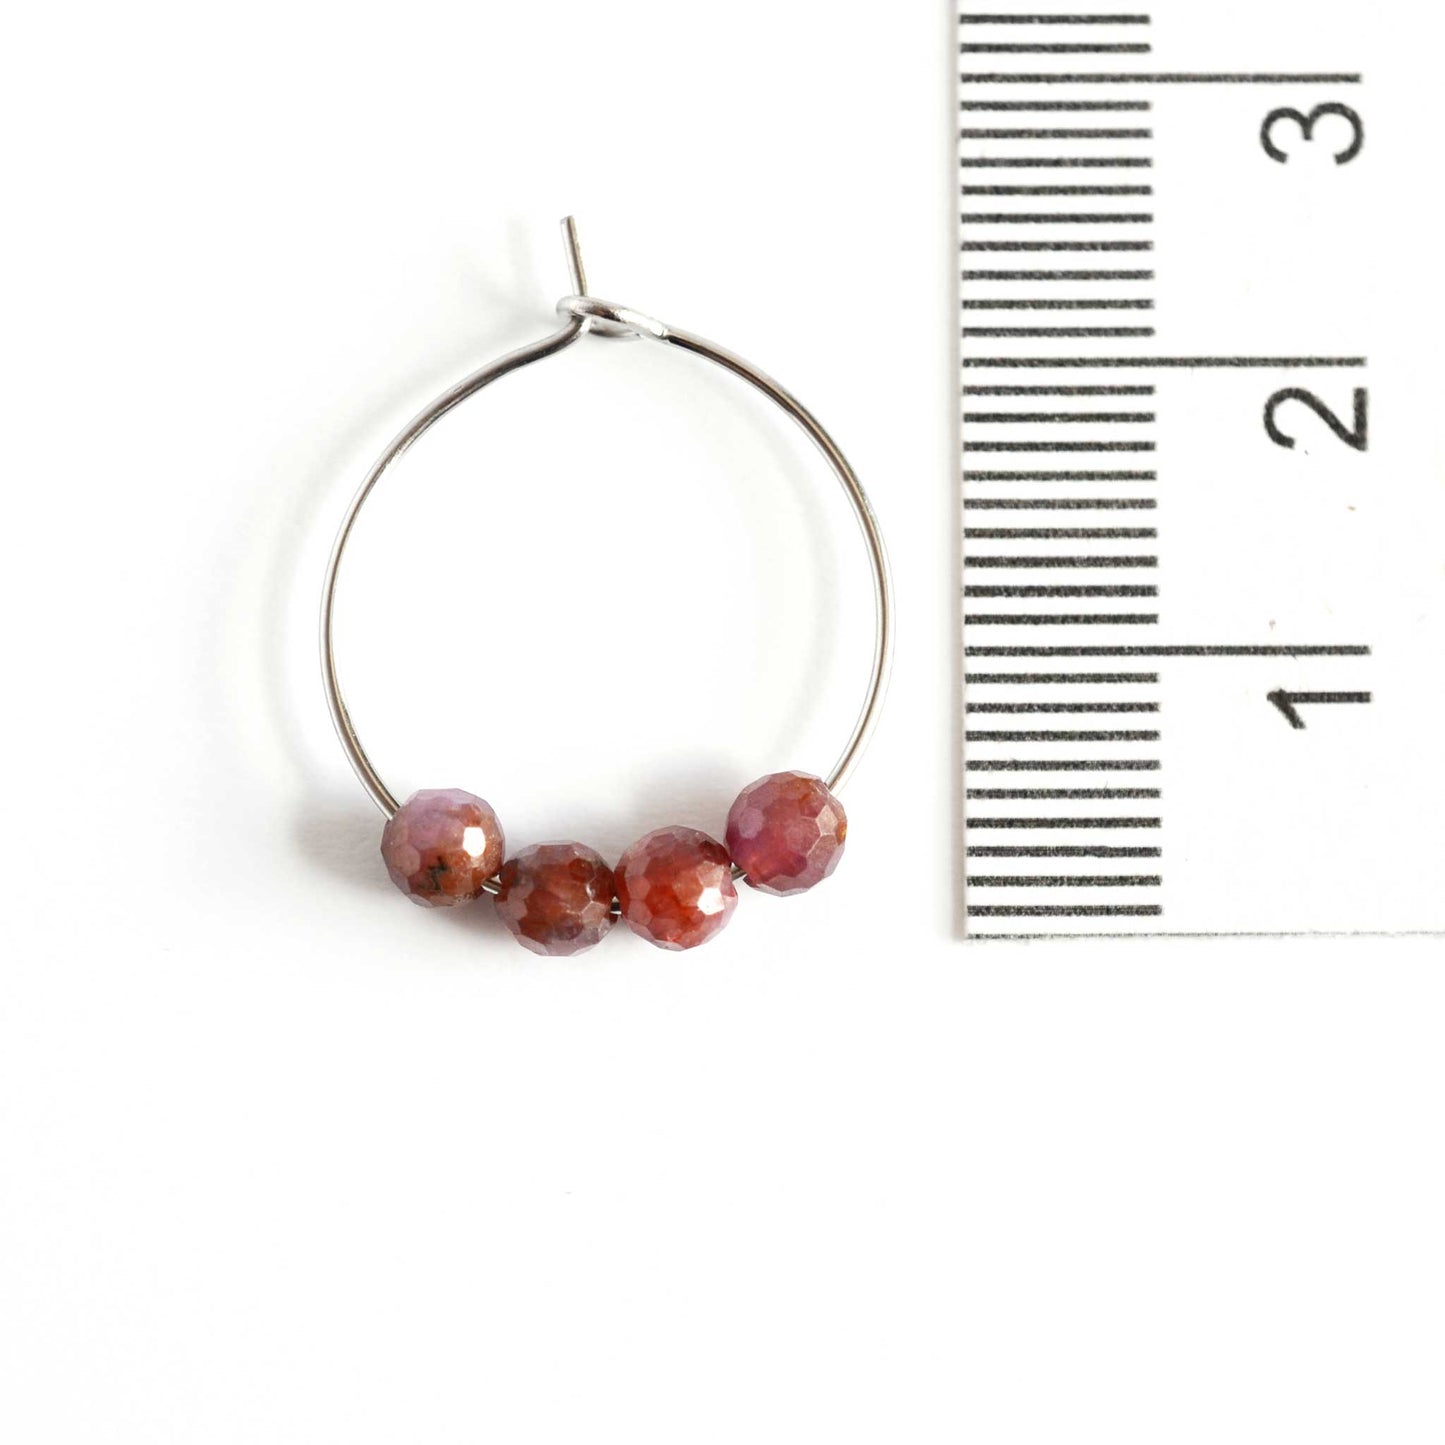 2cm diameter Ruby hoop earrings next to ruler